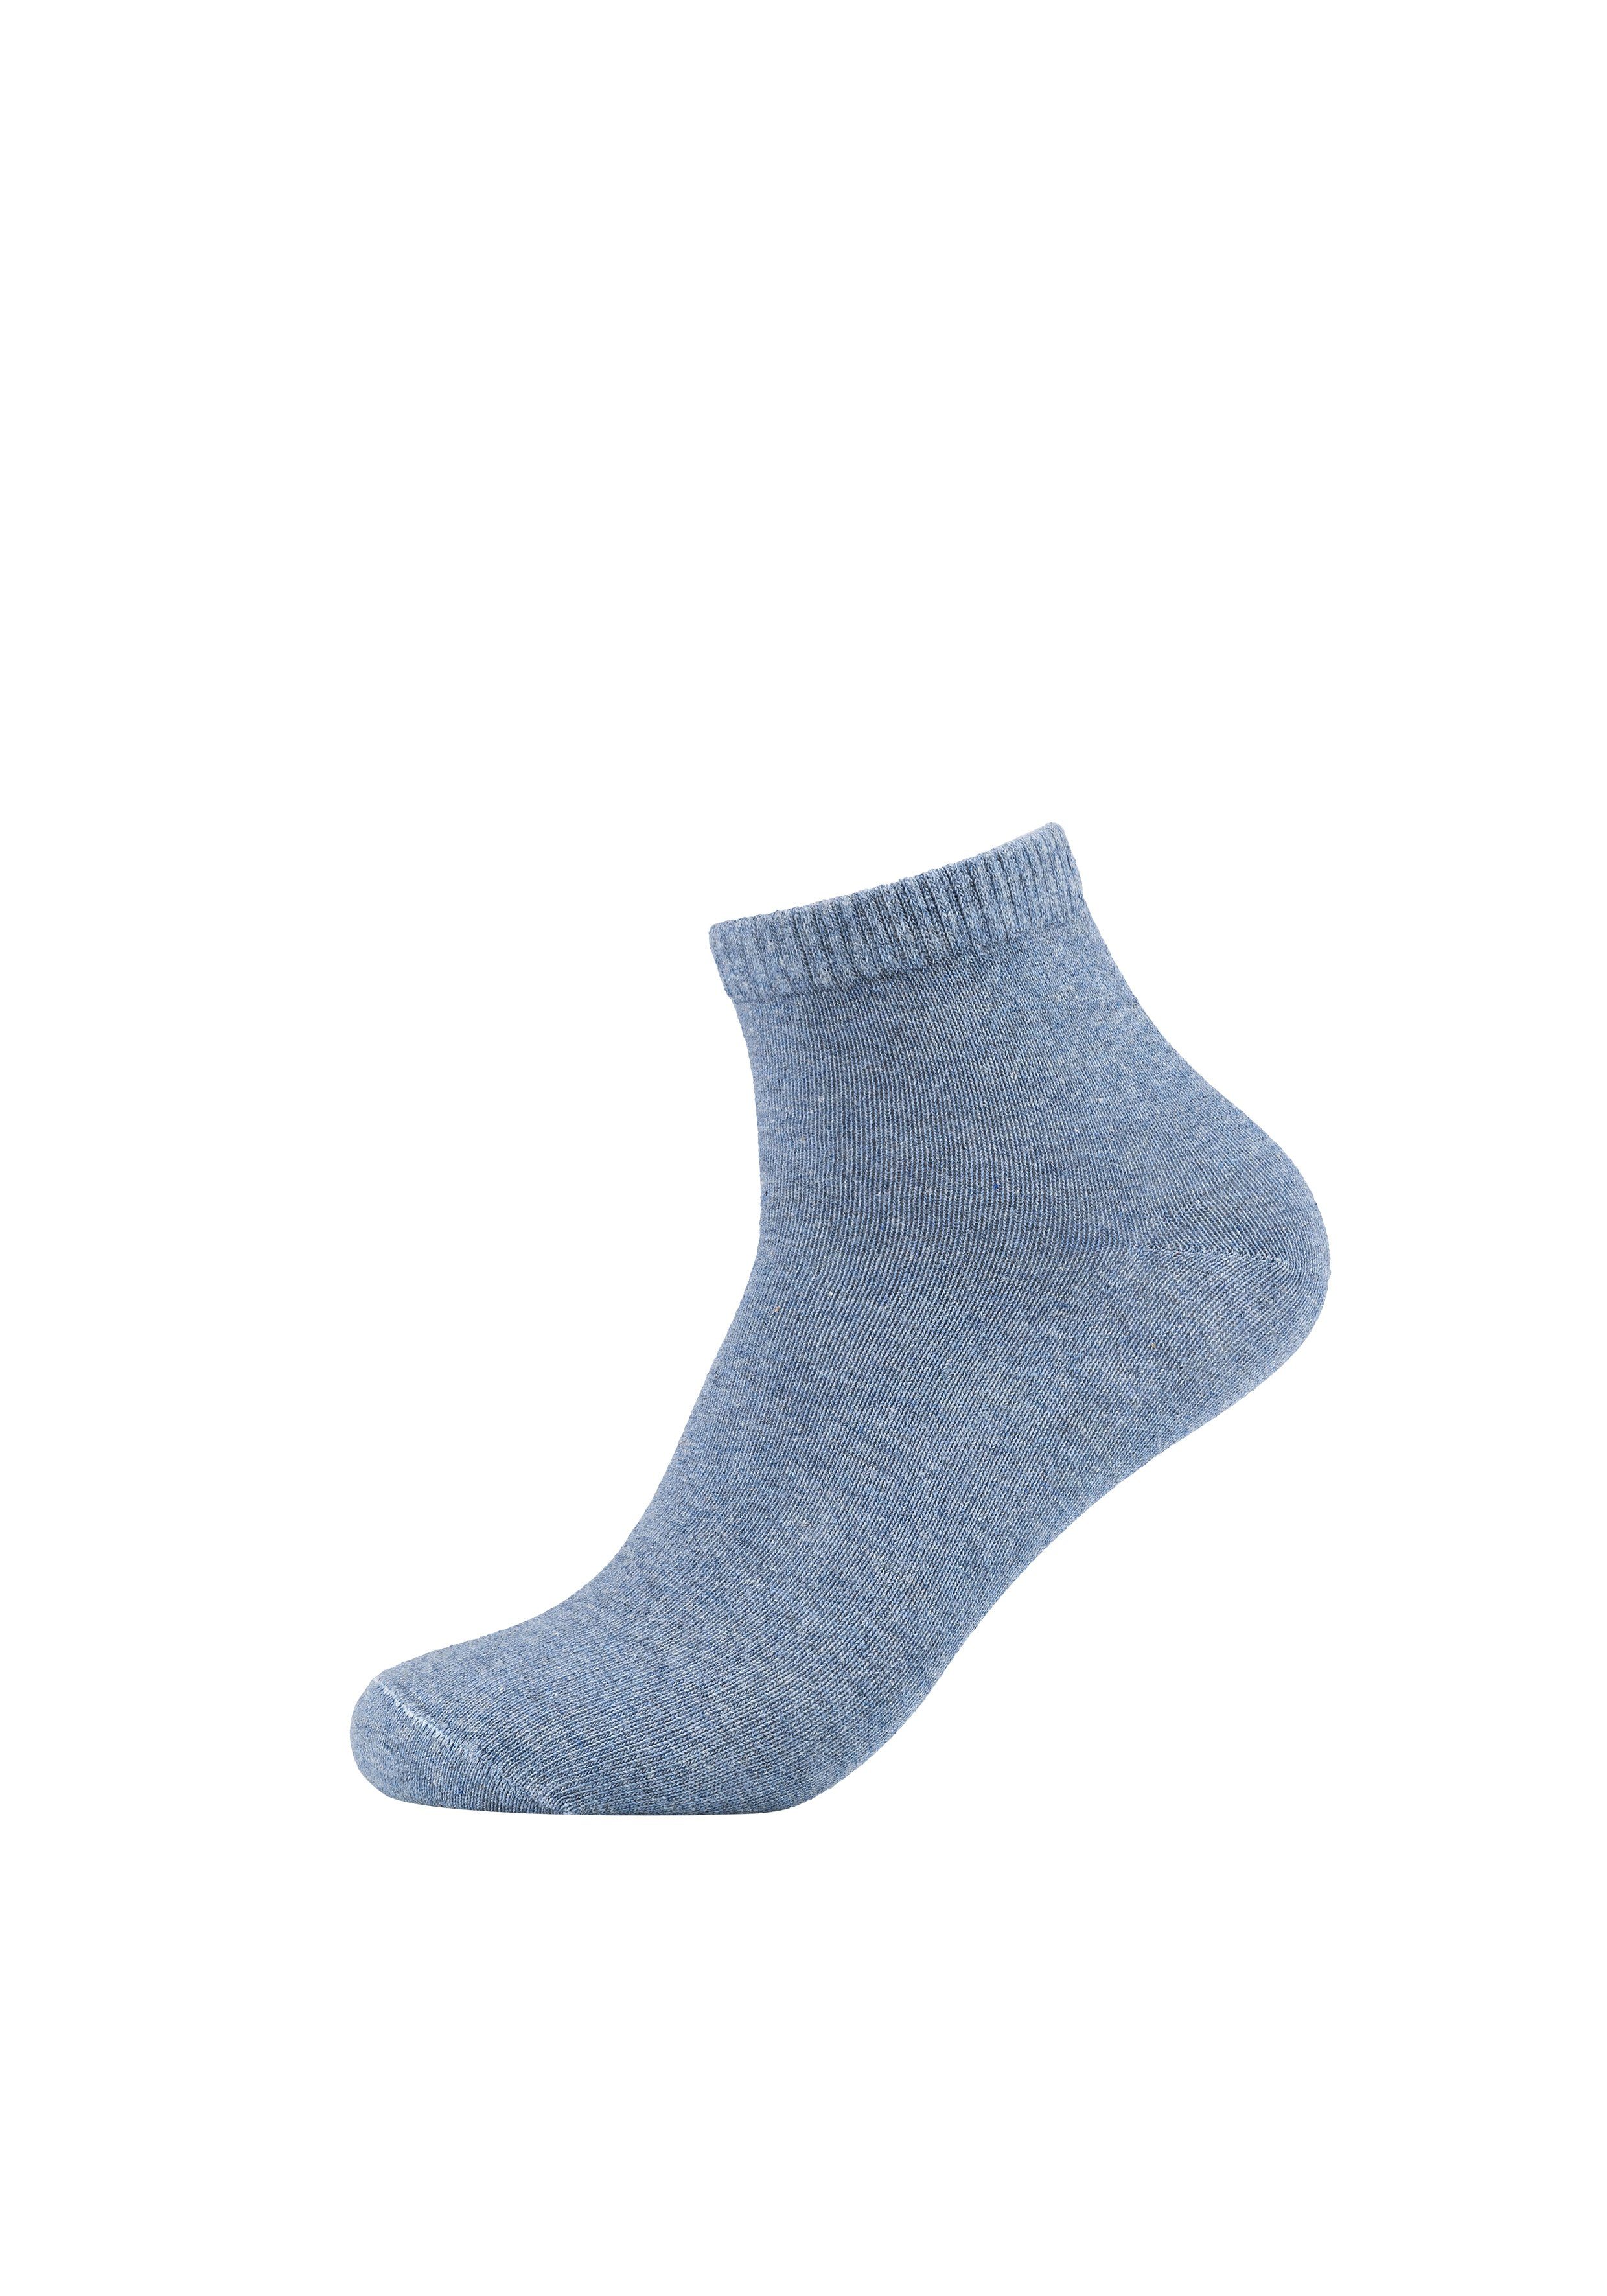 8er im blau, Socken praktischen Essentials Pack s.Oliver (8-Paar) grau